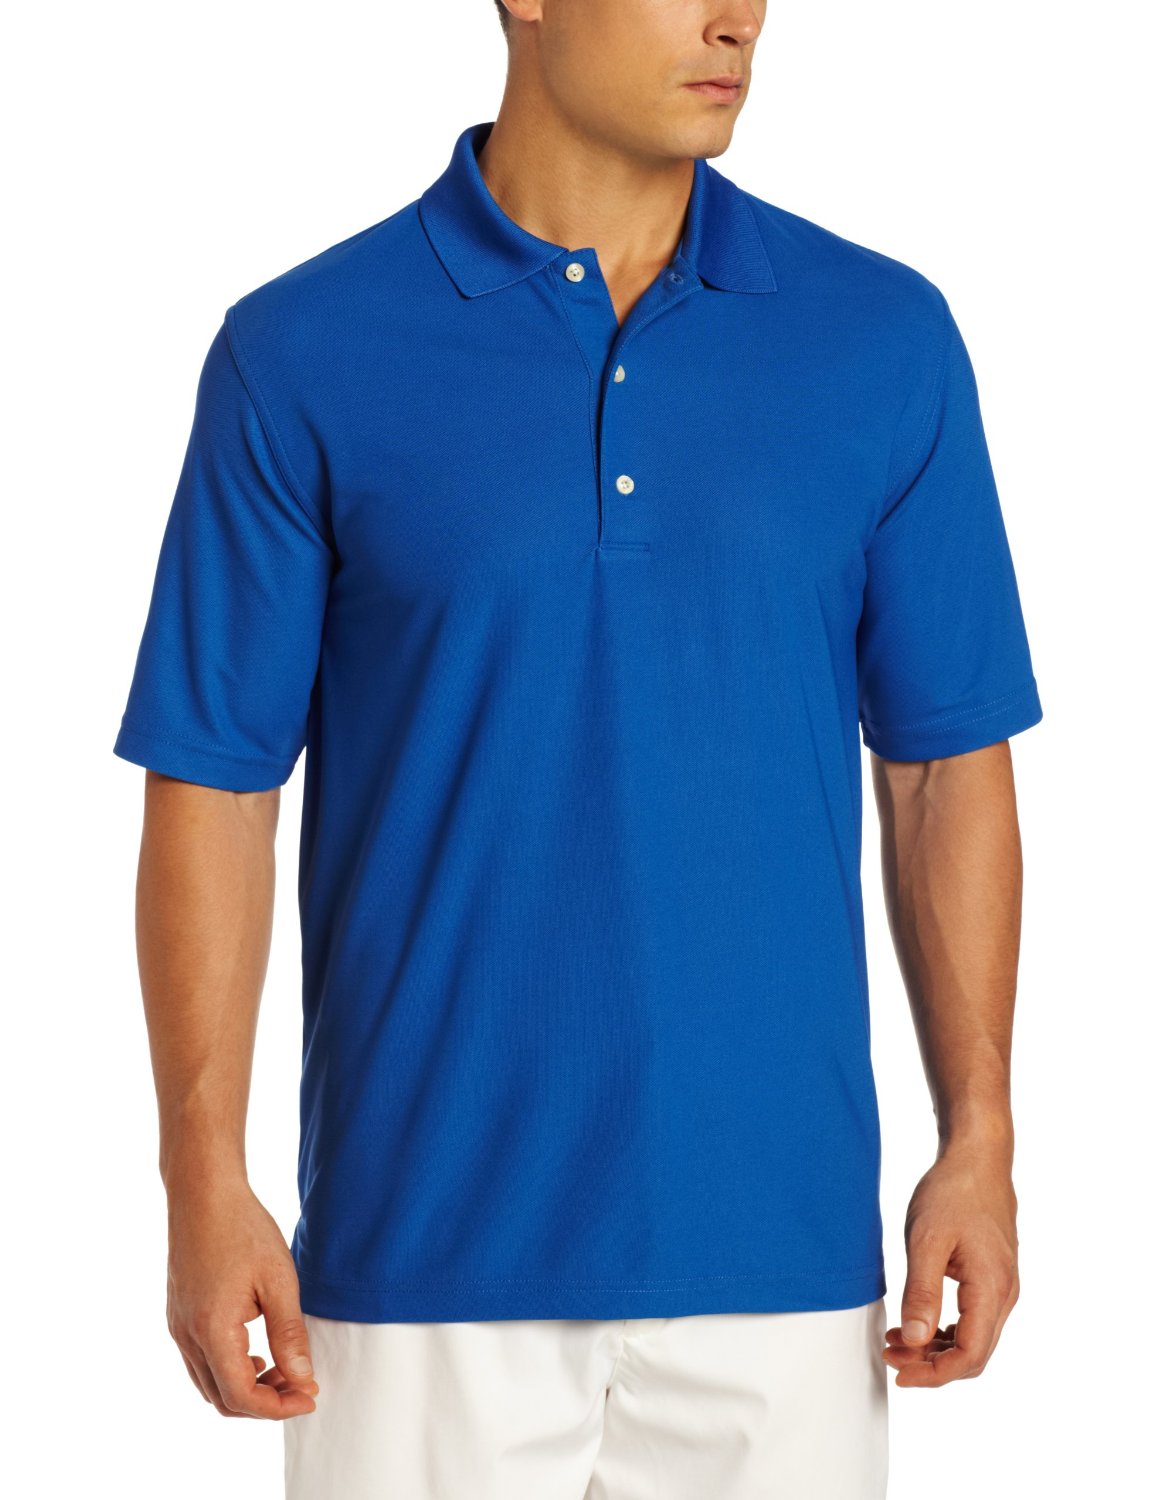 Greg Norman ProTek Micro Pique Short Sleeve Golf Polo Shirts